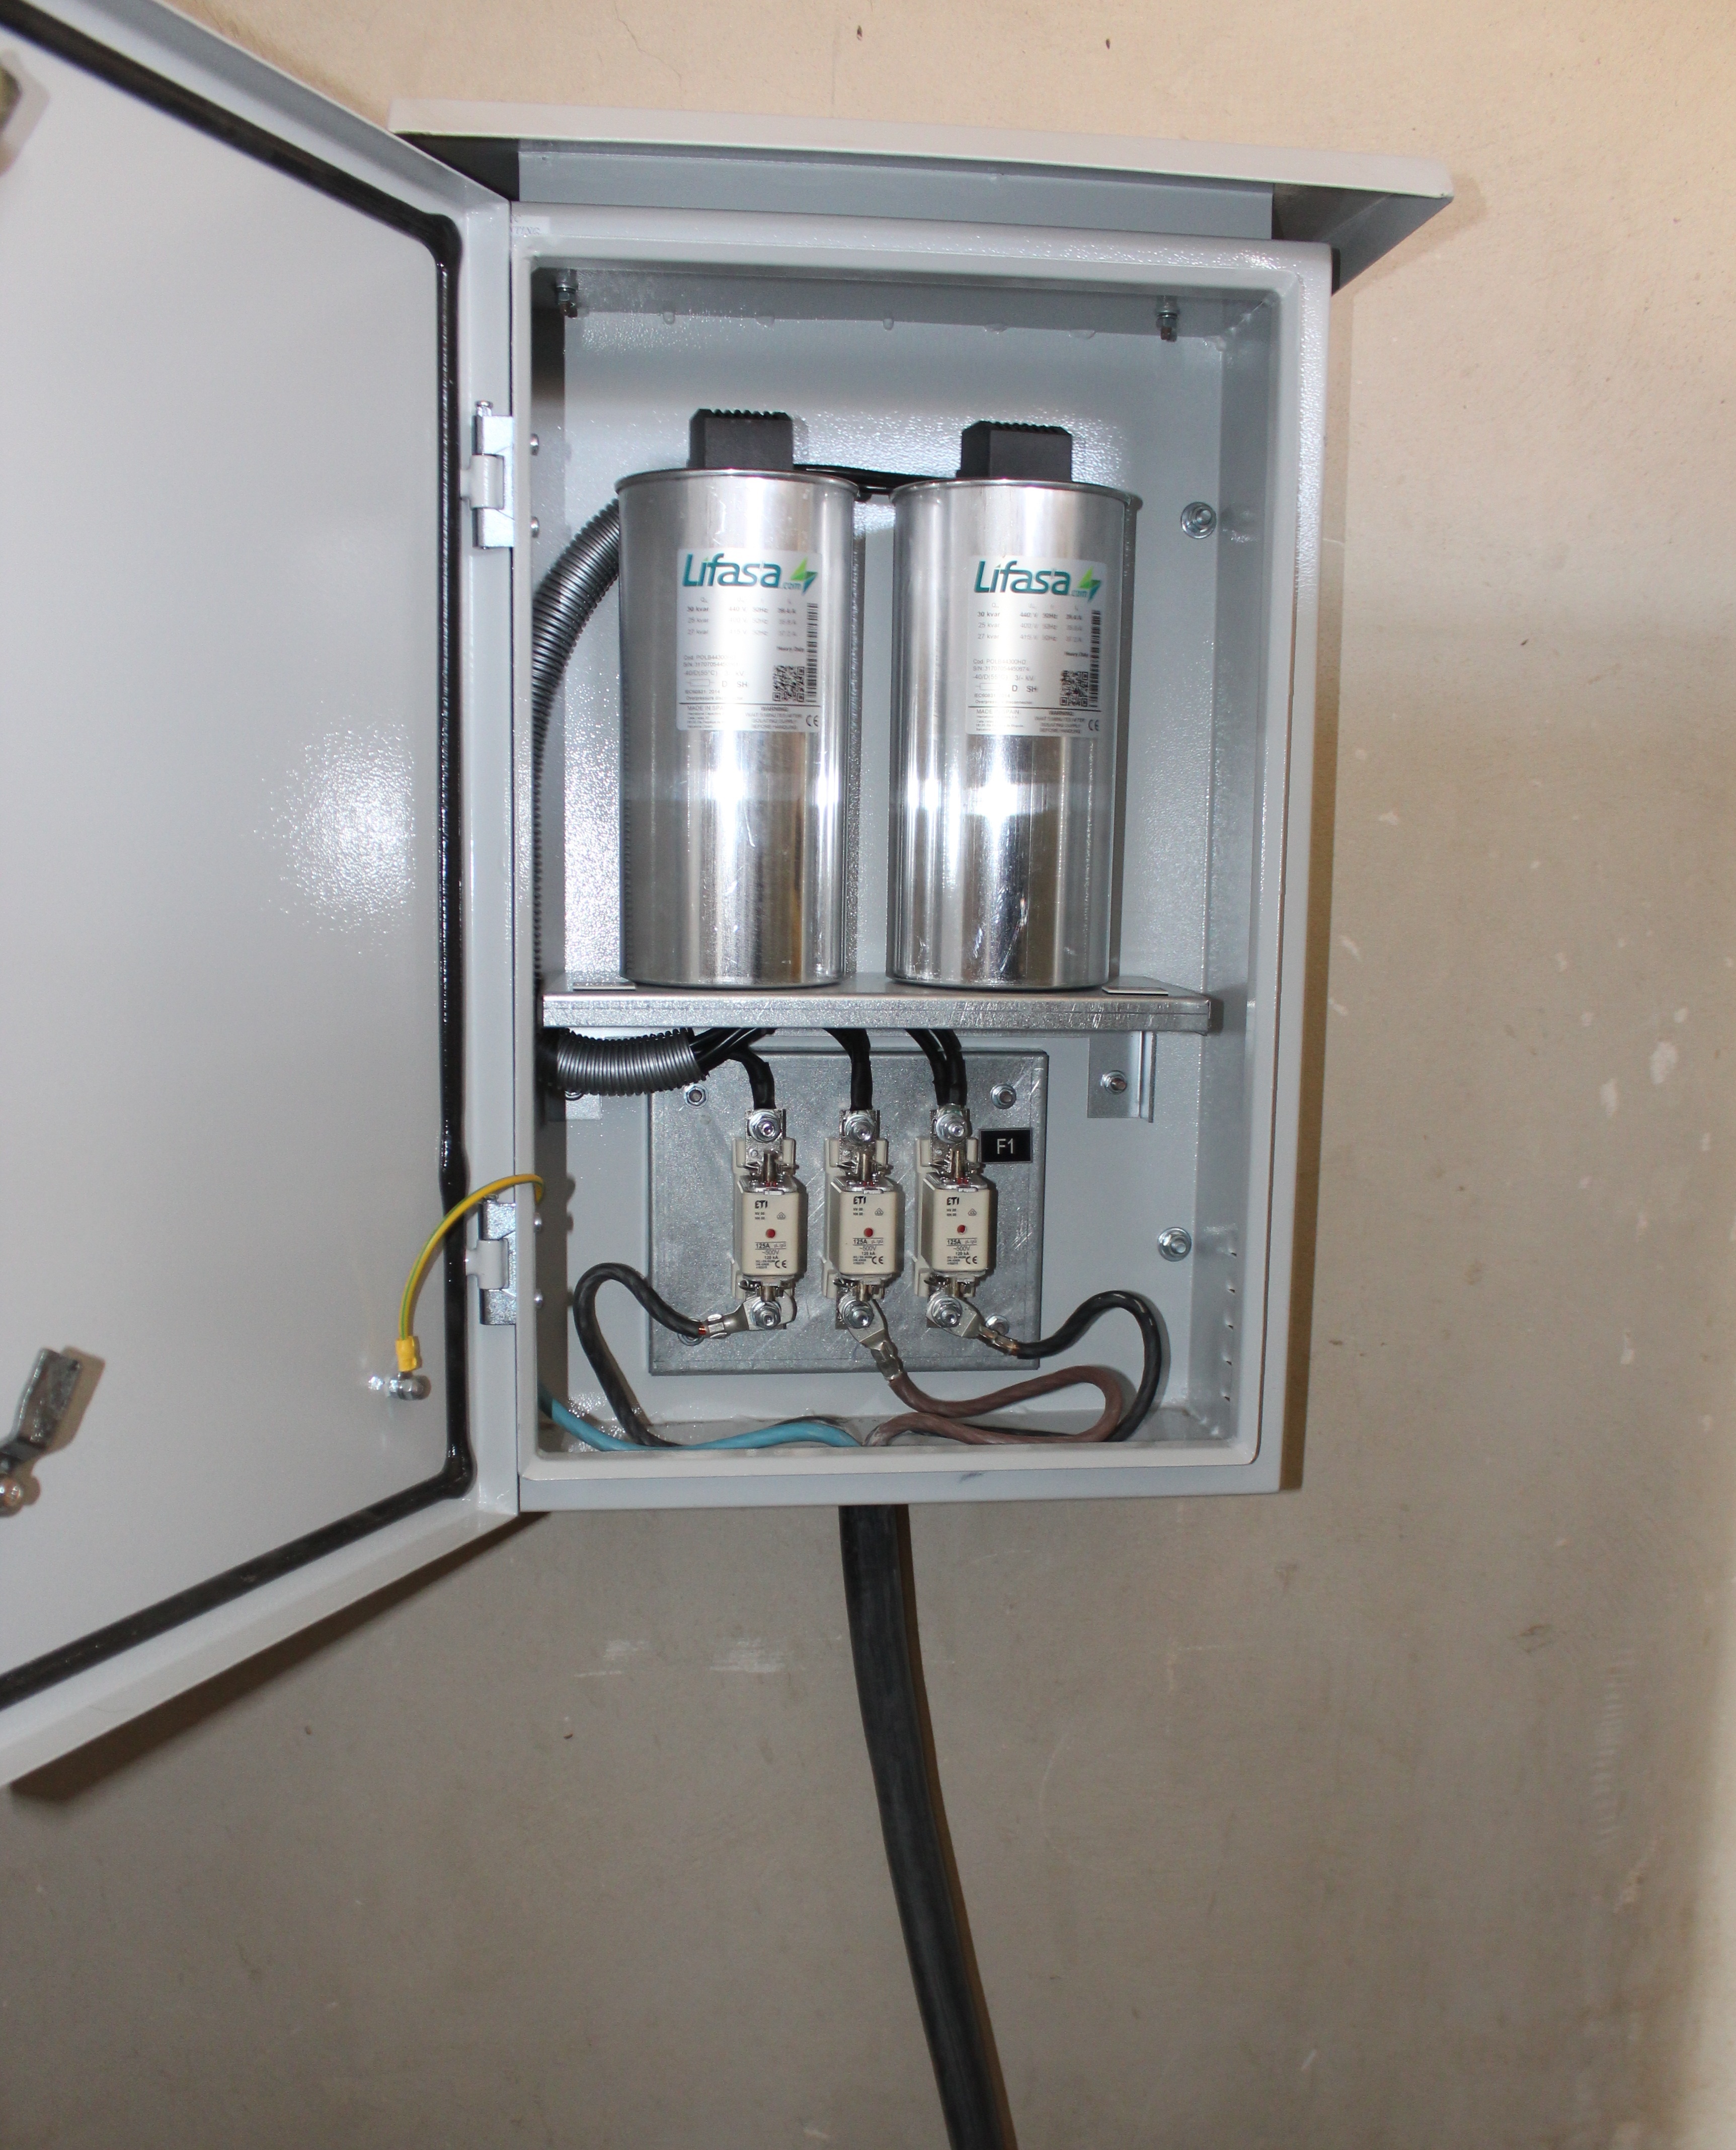 بهره برداری از دو پروژه بهینه سازی و نصب تجهیزات برقی در شهرستان گرمسار